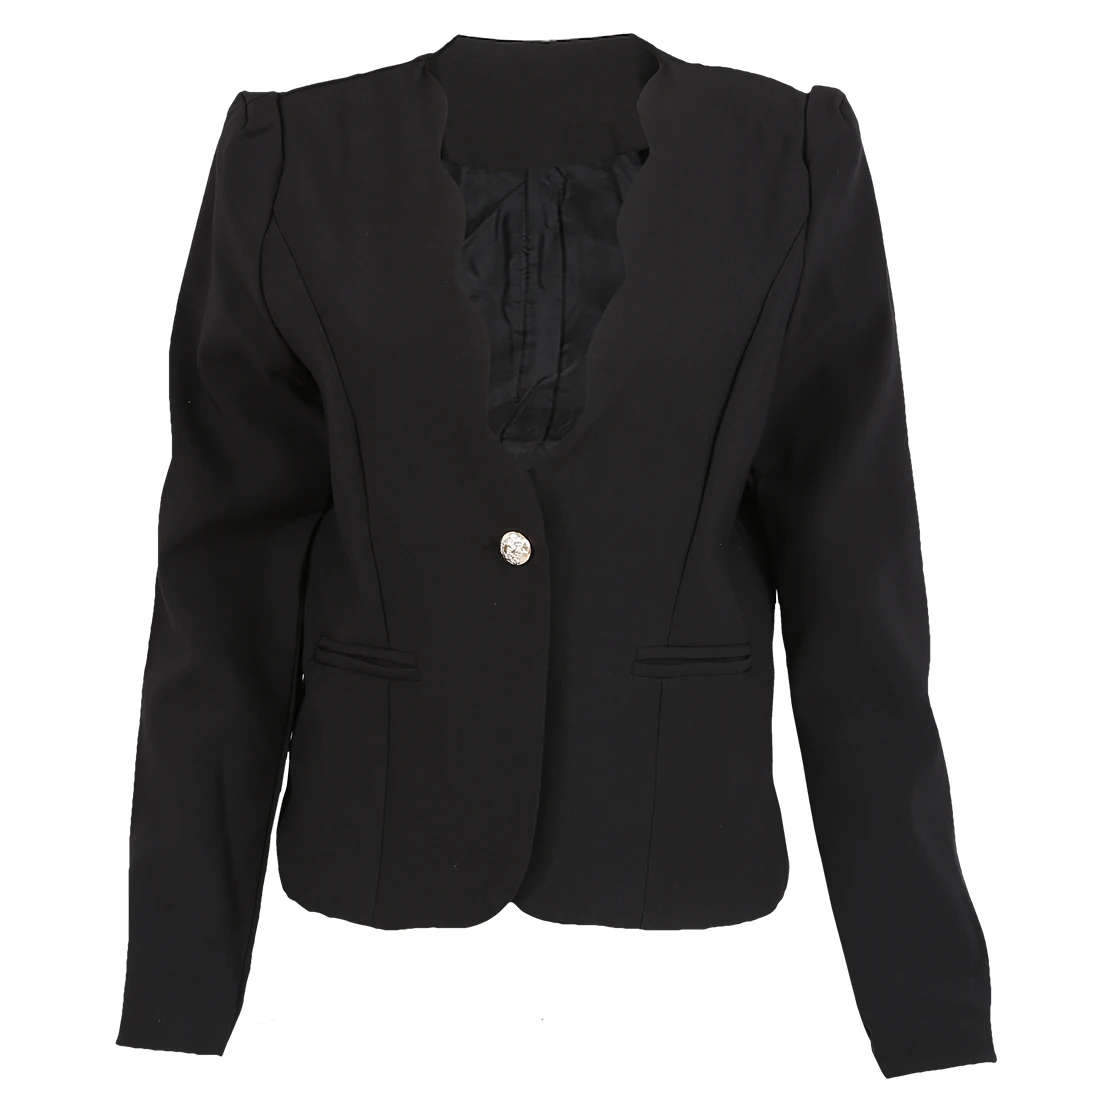 Осень повседневные пиджаки женщин тонкий короткий дизайн костюм Куртки офисные женские пальто одежда-черный, XL